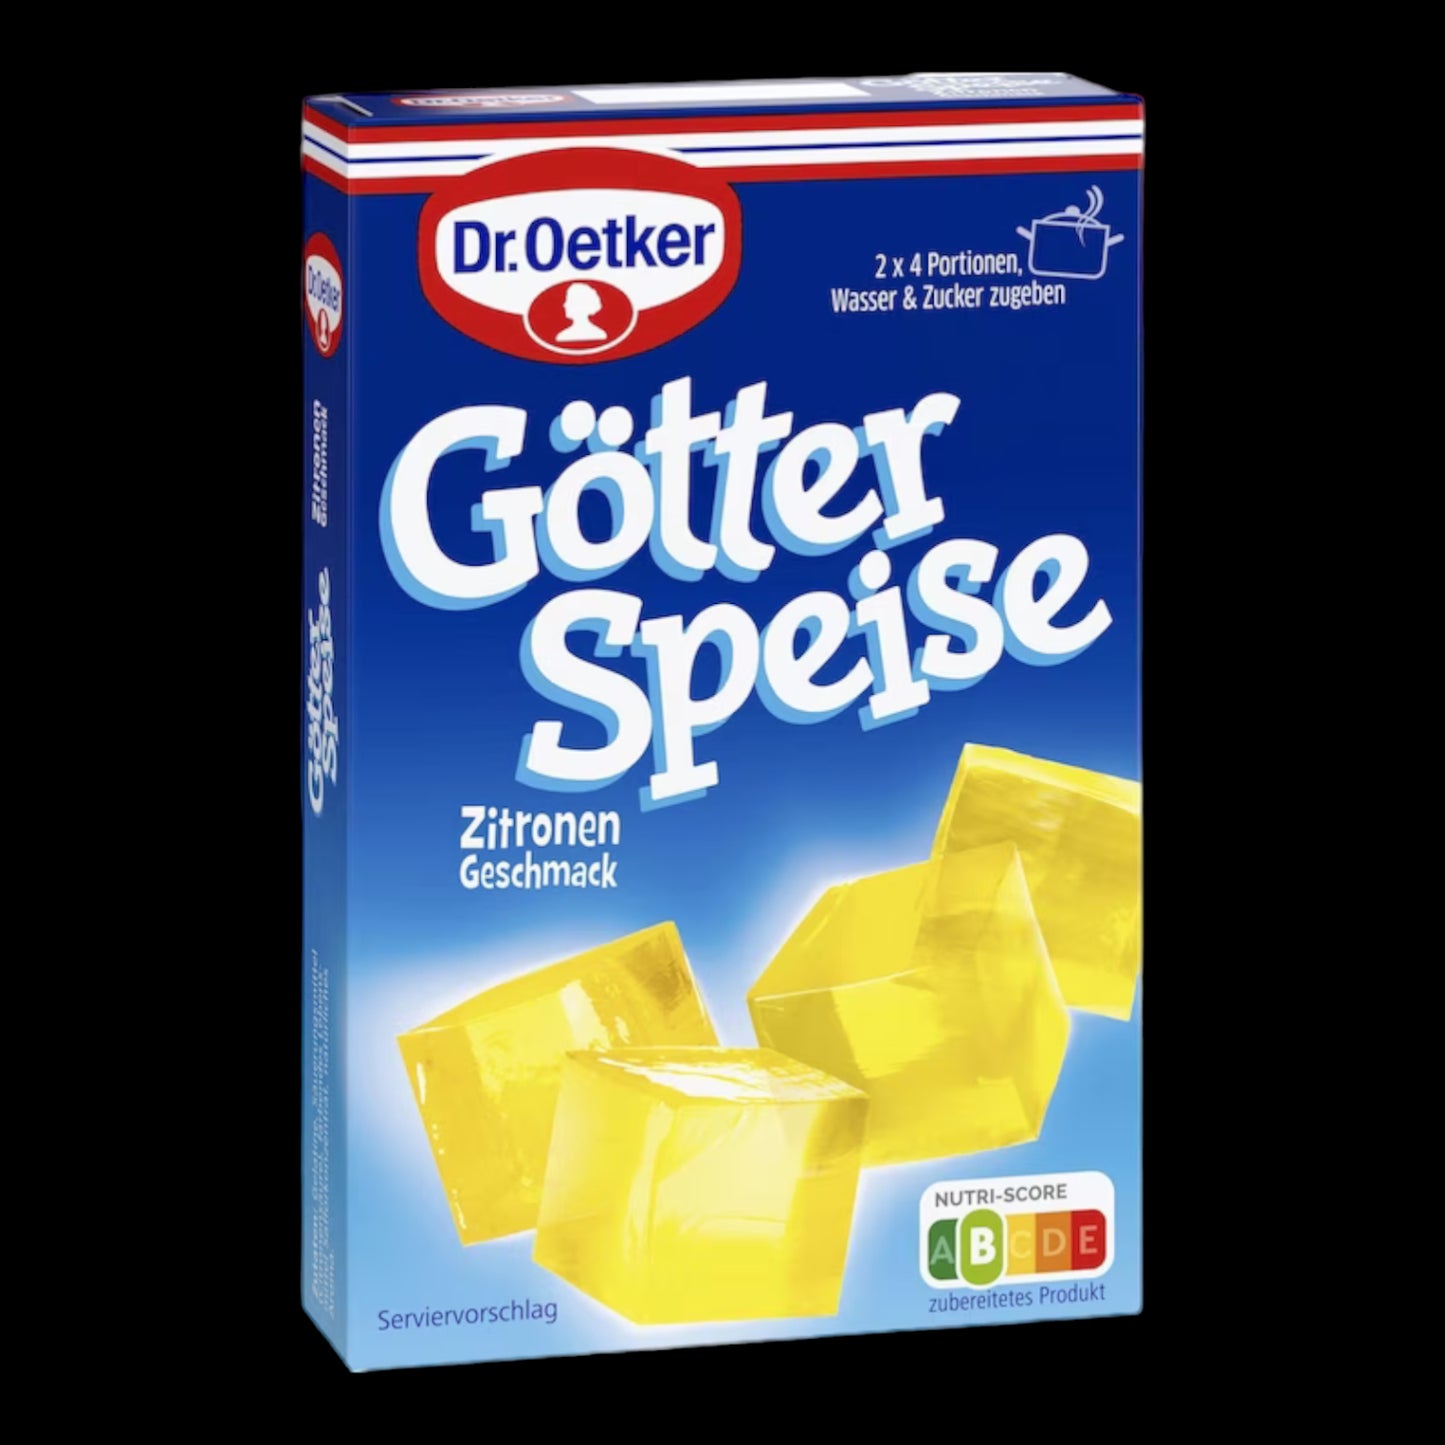 Dr. Oetker Götterspeise Zitrone 25.2g